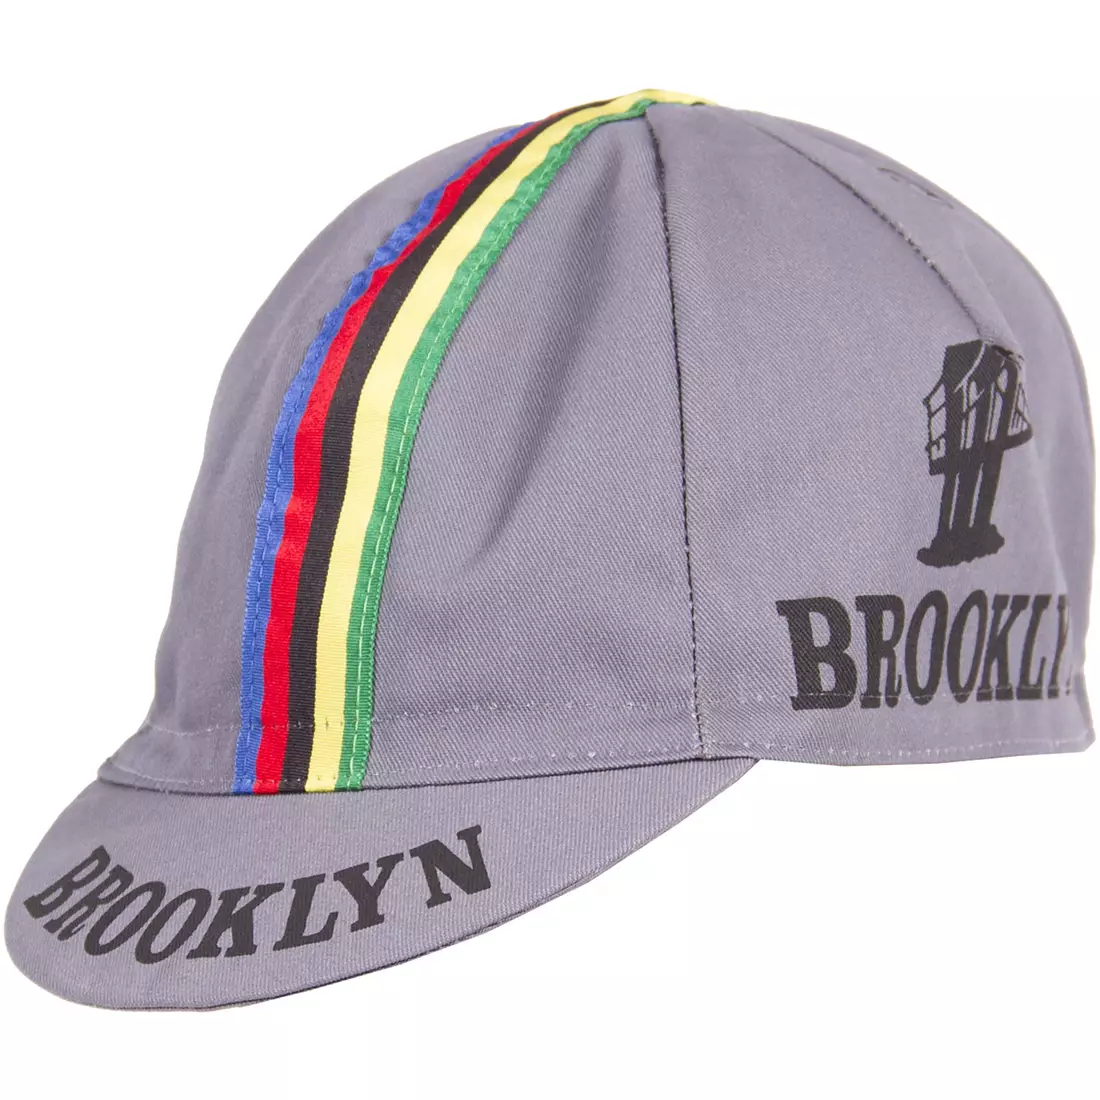 GIORDANA SS18 kerékpáros sapka - Brooklyn - Szürke csíkos szalaggal GI-S6-COCA-BROK-GREY egy méret